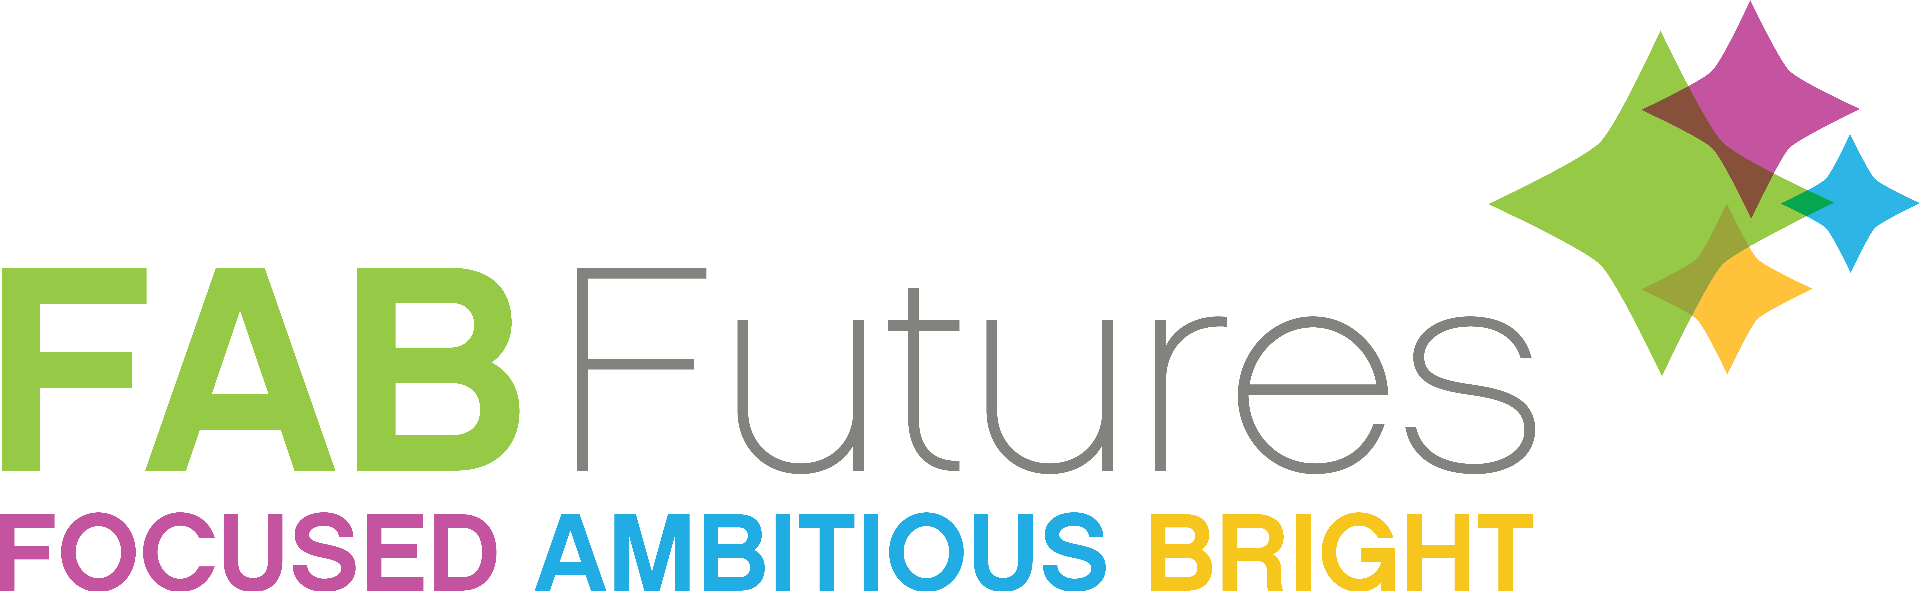 FAB Futures, FOCUSED AMBITIOUS BRIGHT Logo